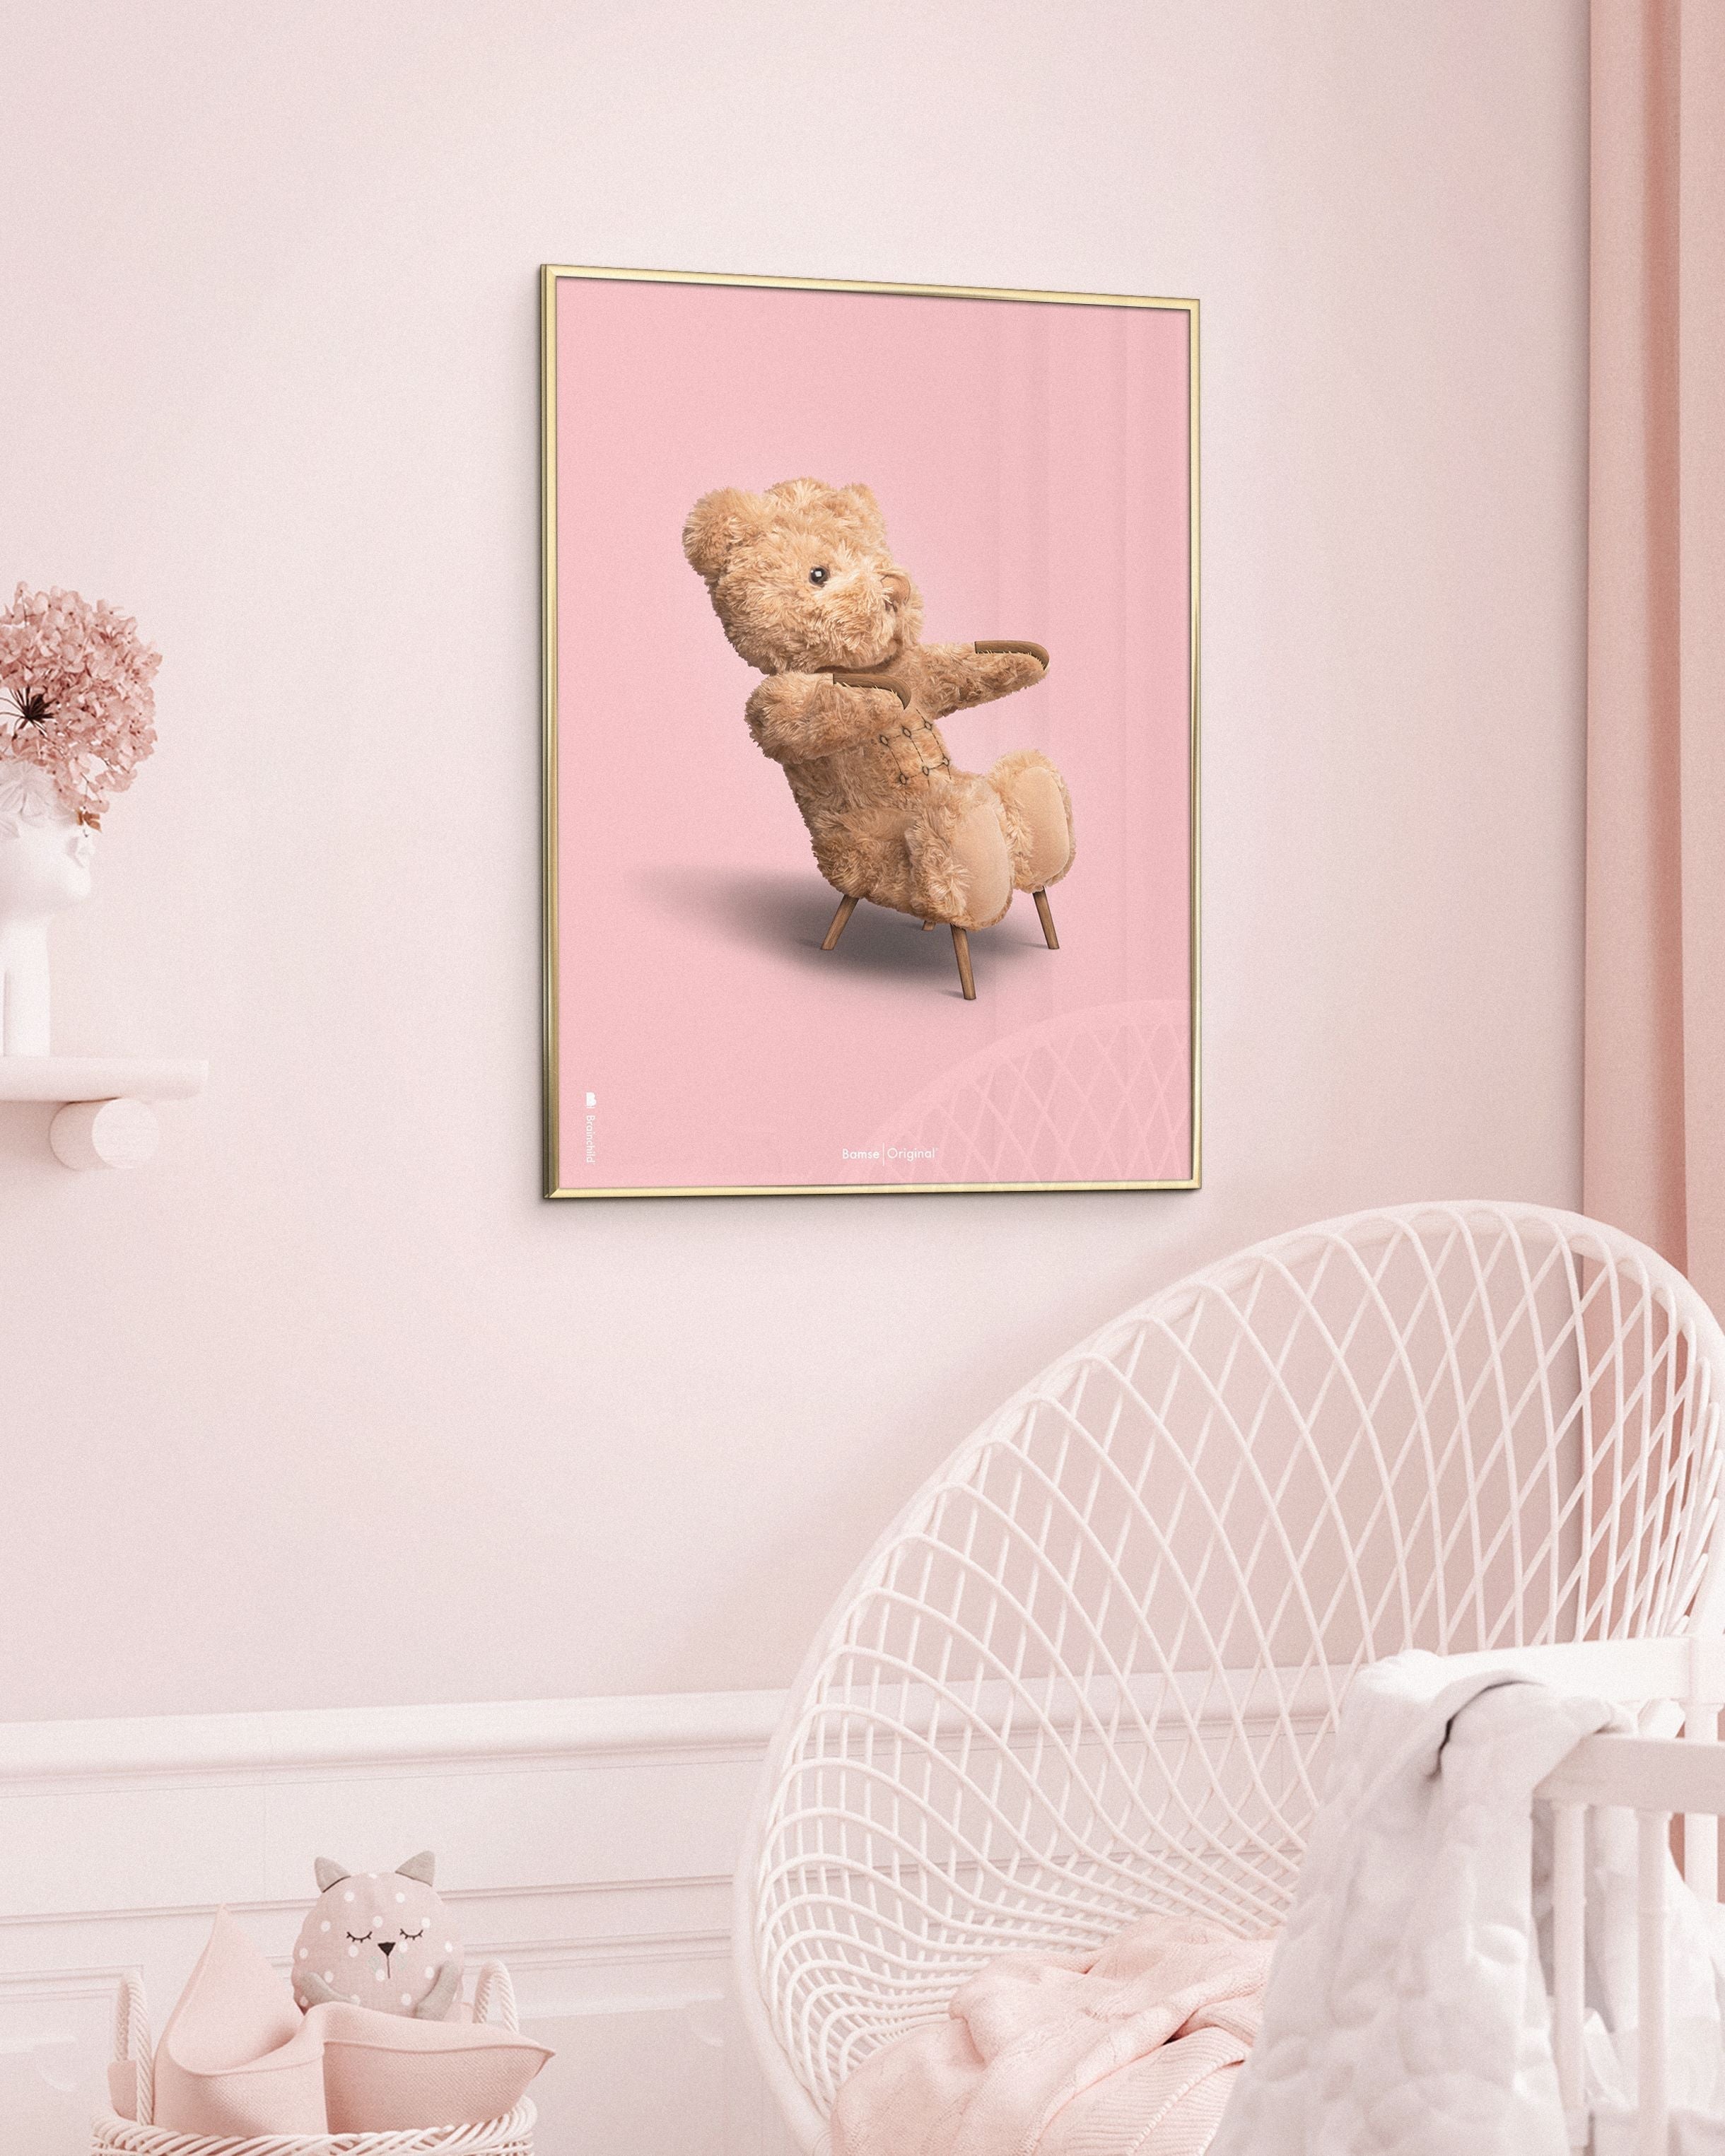 Brainchild Teddybär Classic Poster Frame aus dunklem Holz Ram 70x100 Cm, rosa Hintergrund